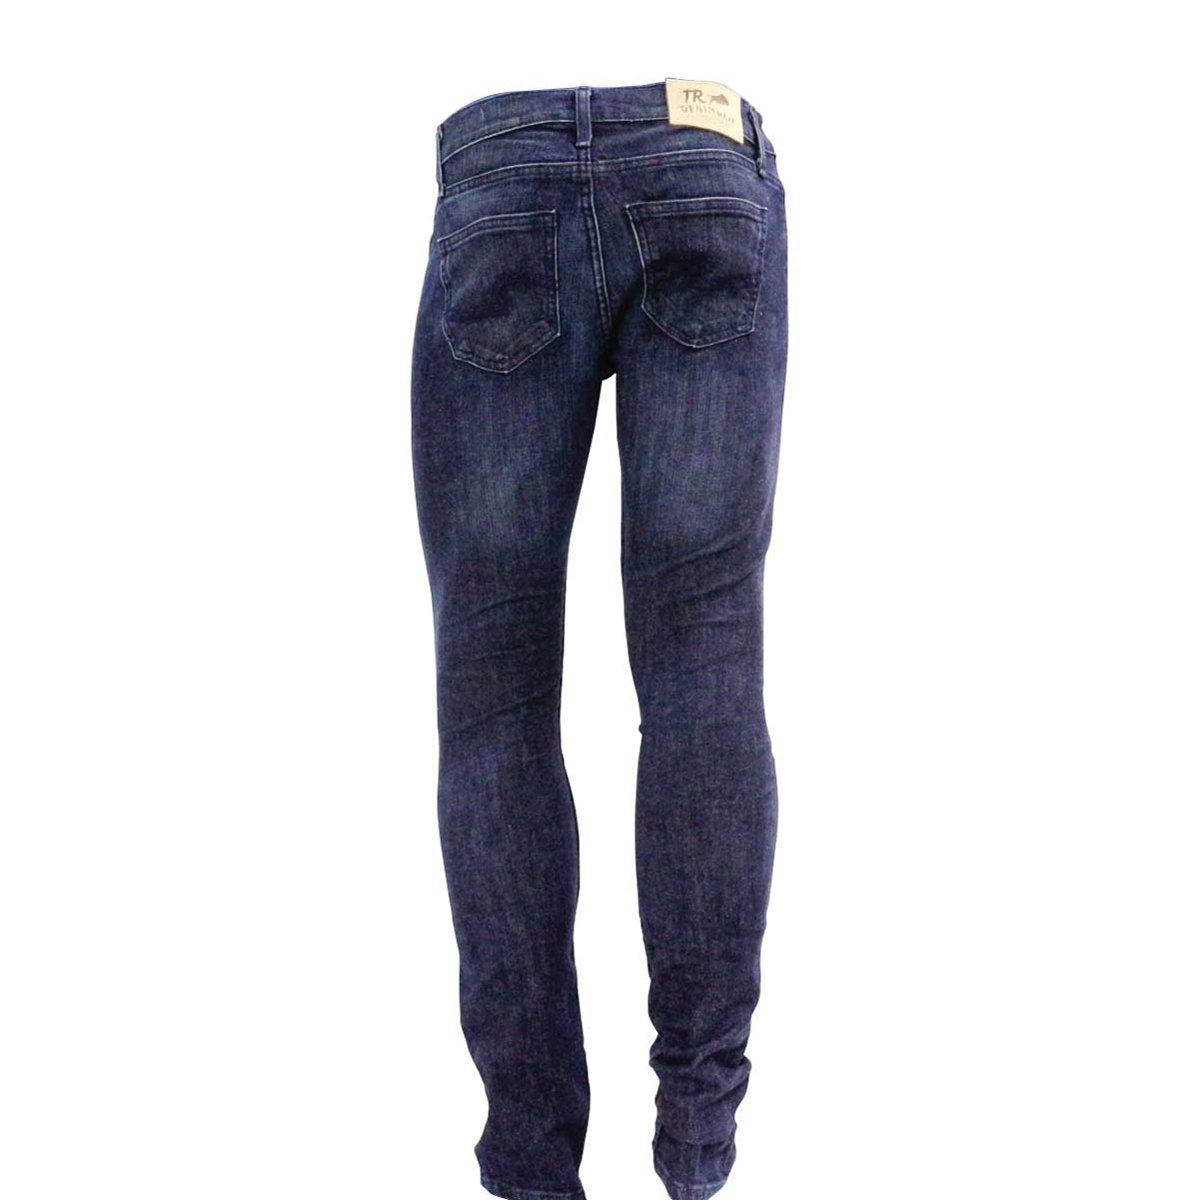 Jeans Rieder Super Slim Tr Denimwear